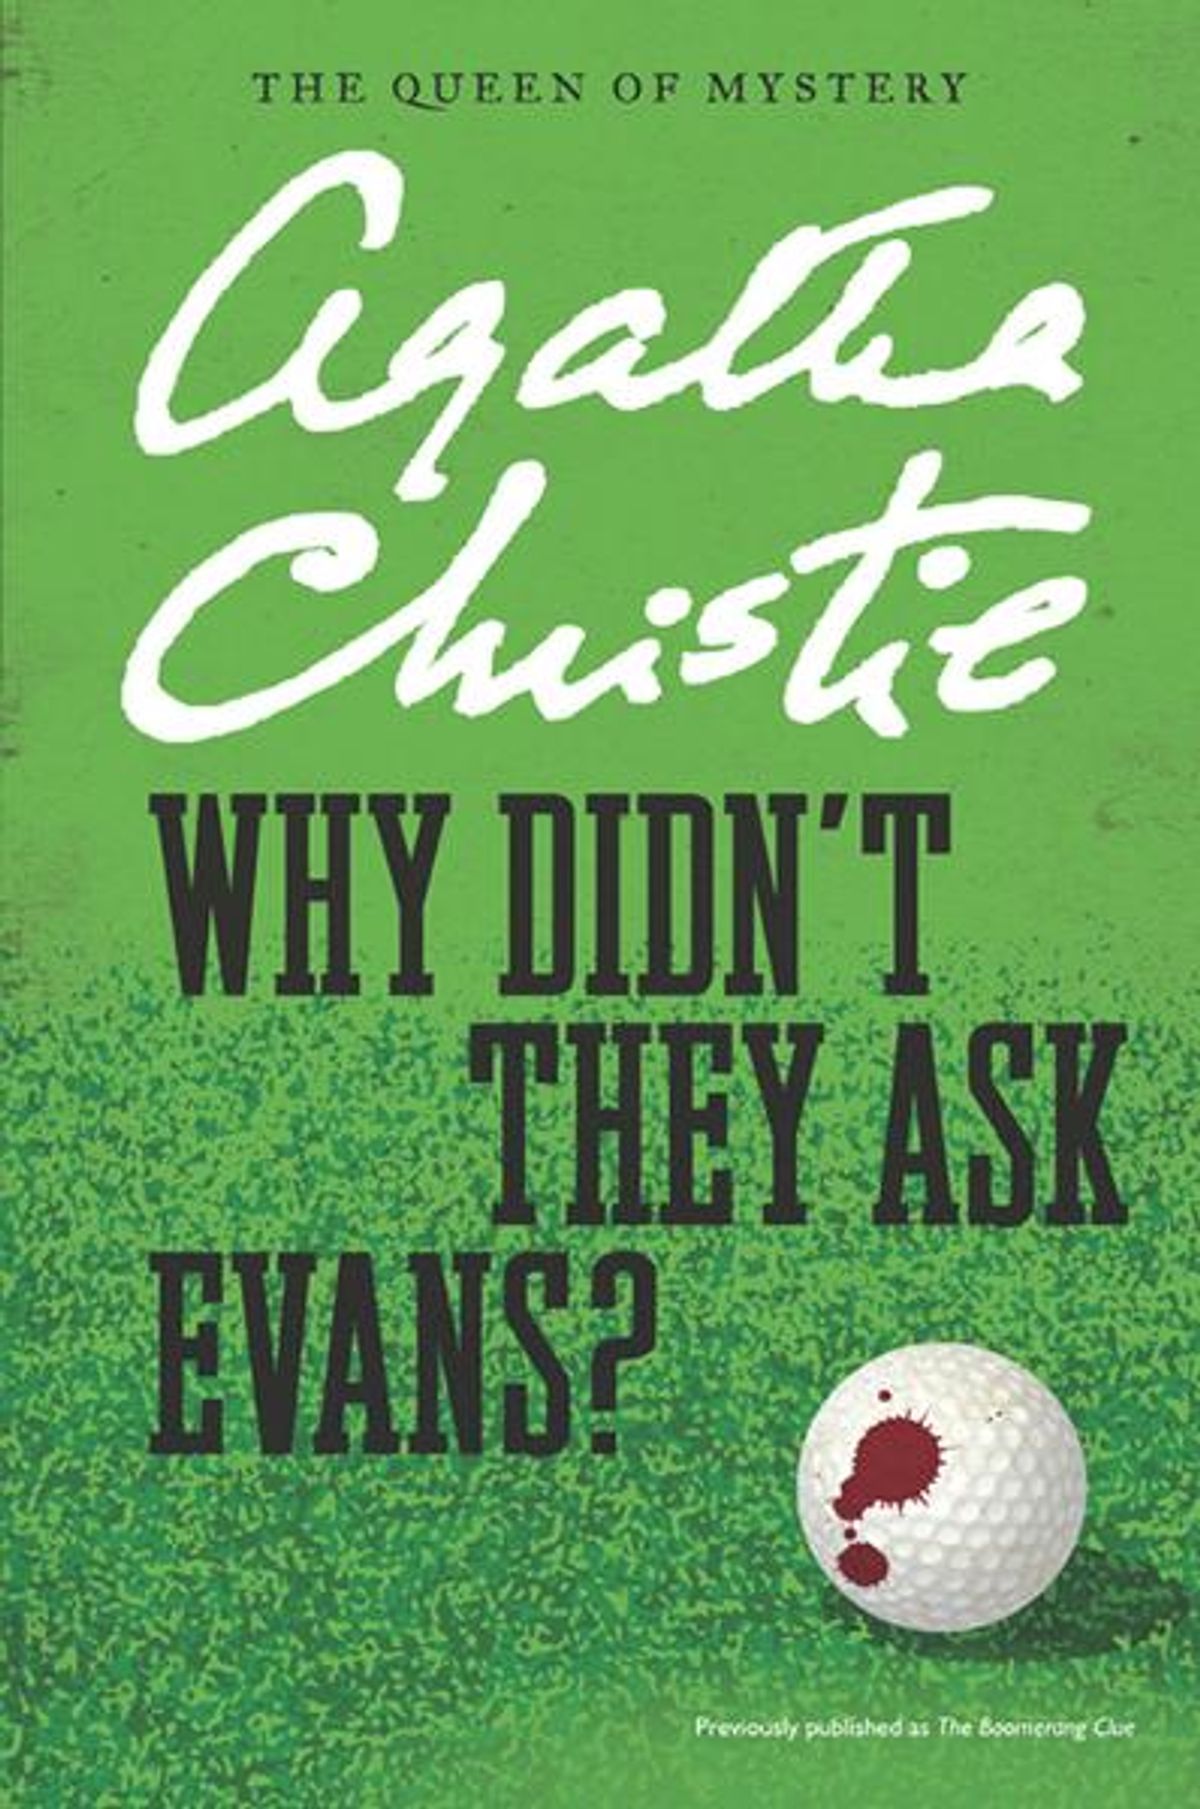 Agatha Christie books 34